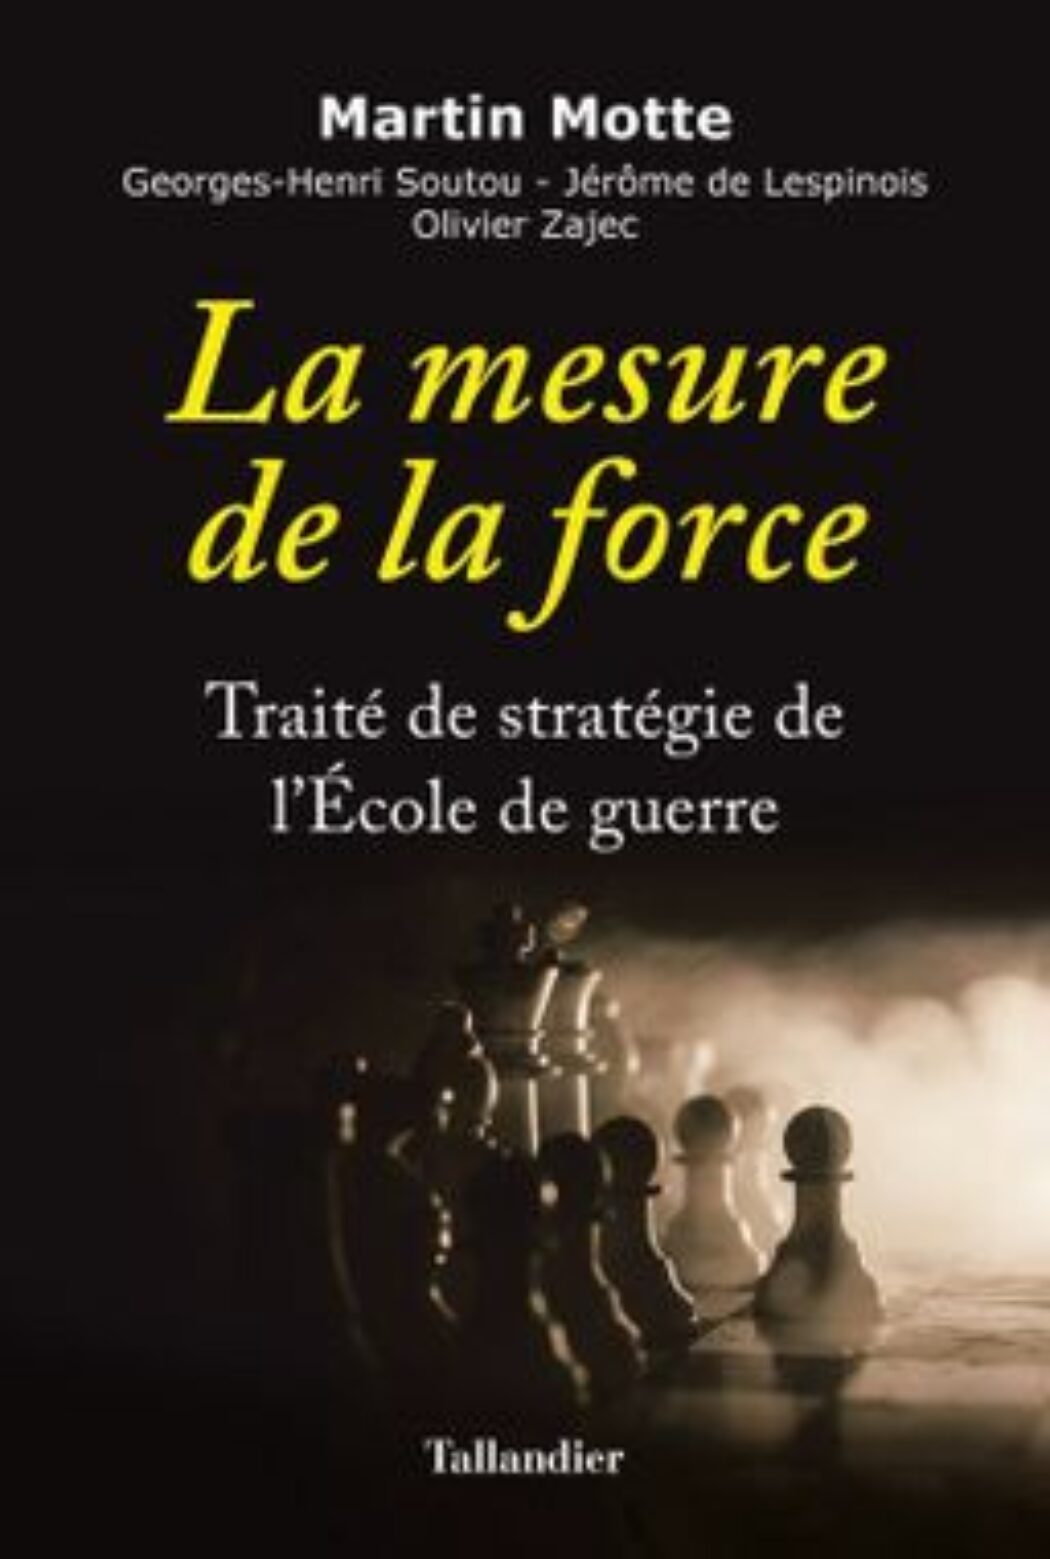 La mesure de la force par Motte, Soutou, Lespinois, Zajec